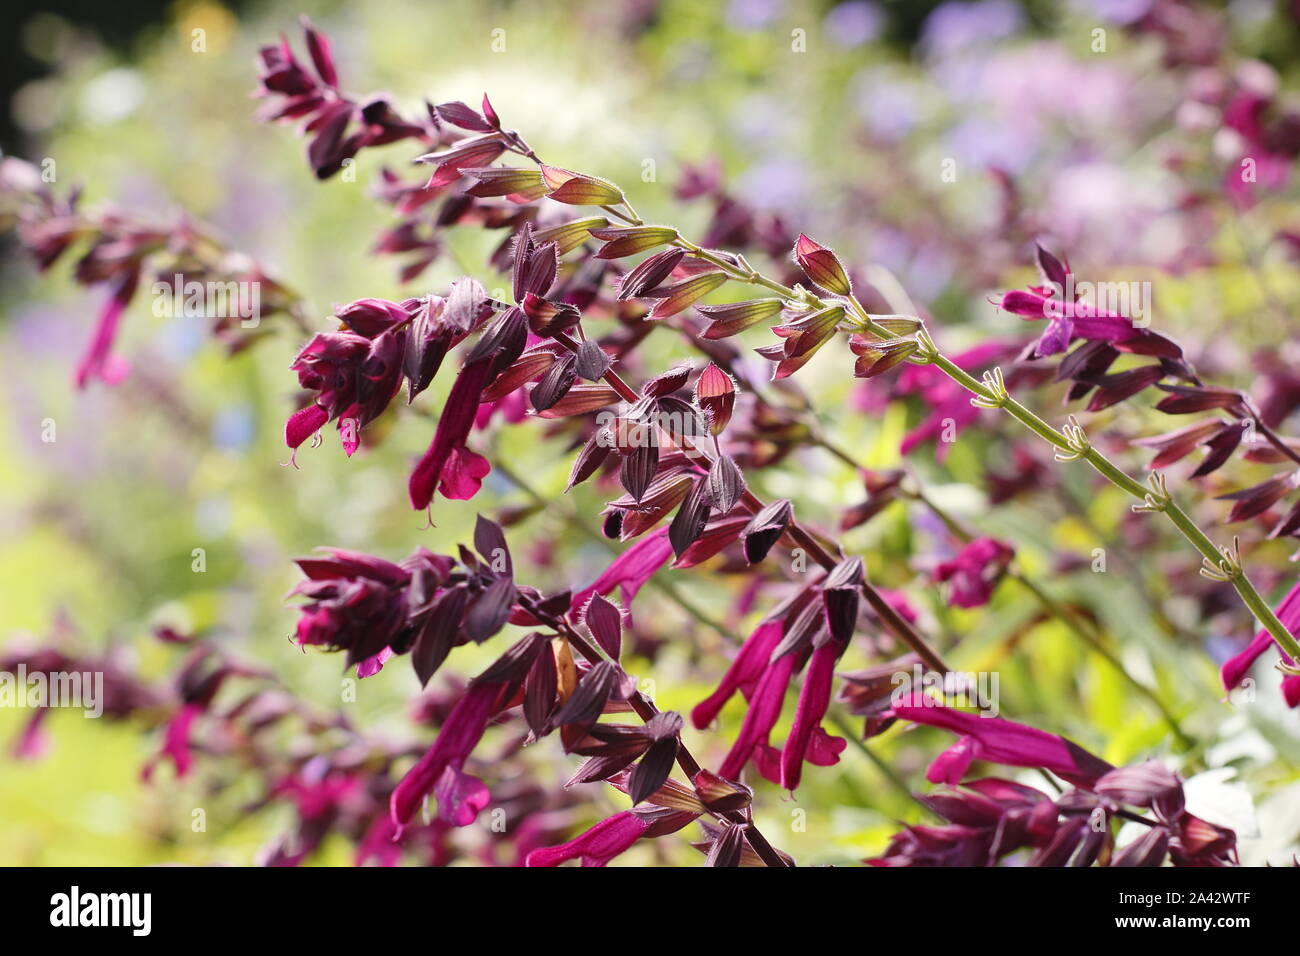 Salvia 'Liebe und Wünsche' aromatischer Salbei angezeigte charakteristischen tiefen magenta Blumen in einem Garten Grenze - September. Großbritannien Stockfoto